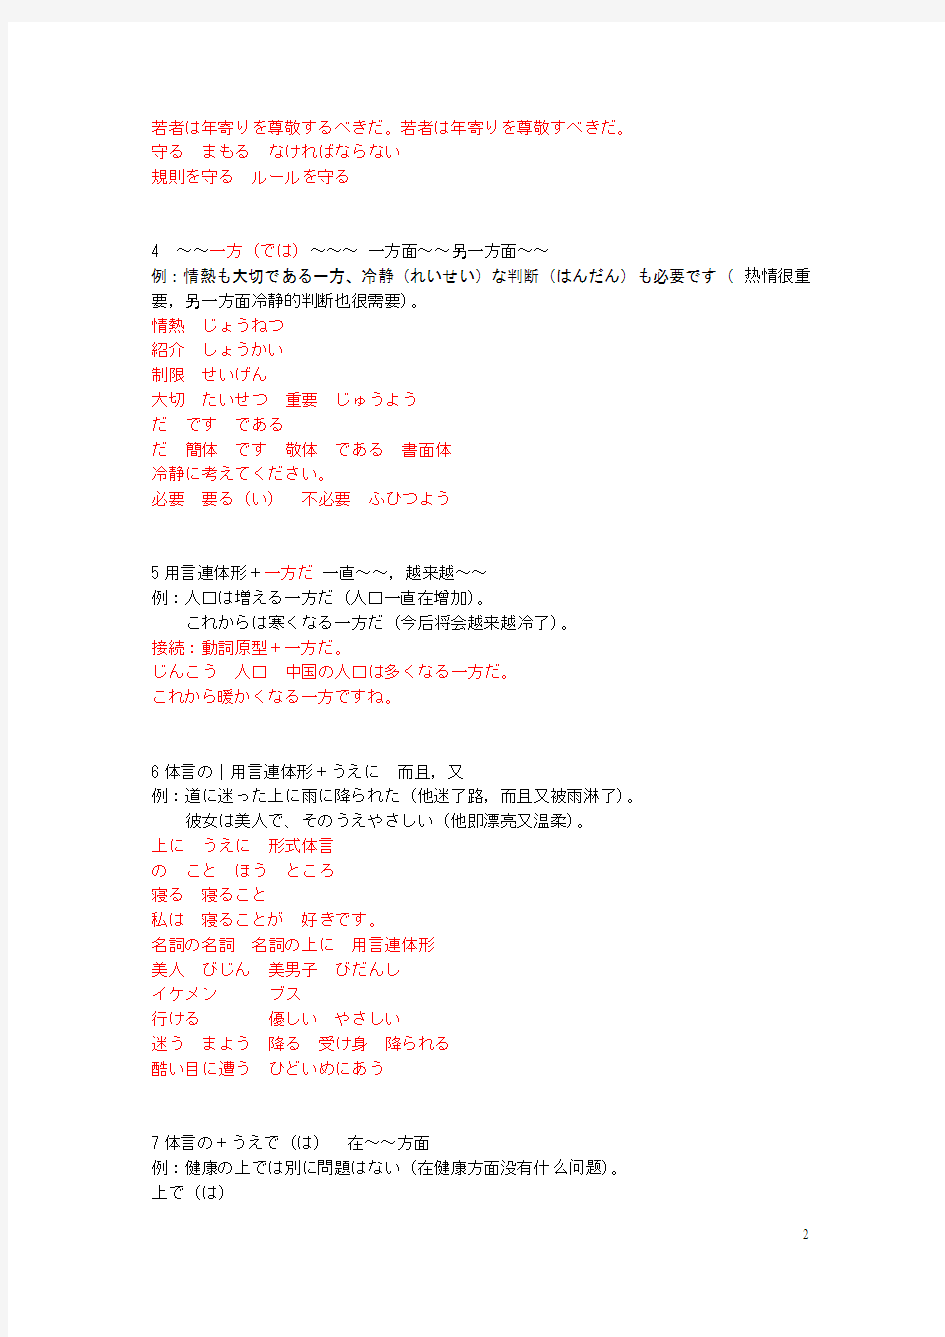 日语二级语法总结191解釈版